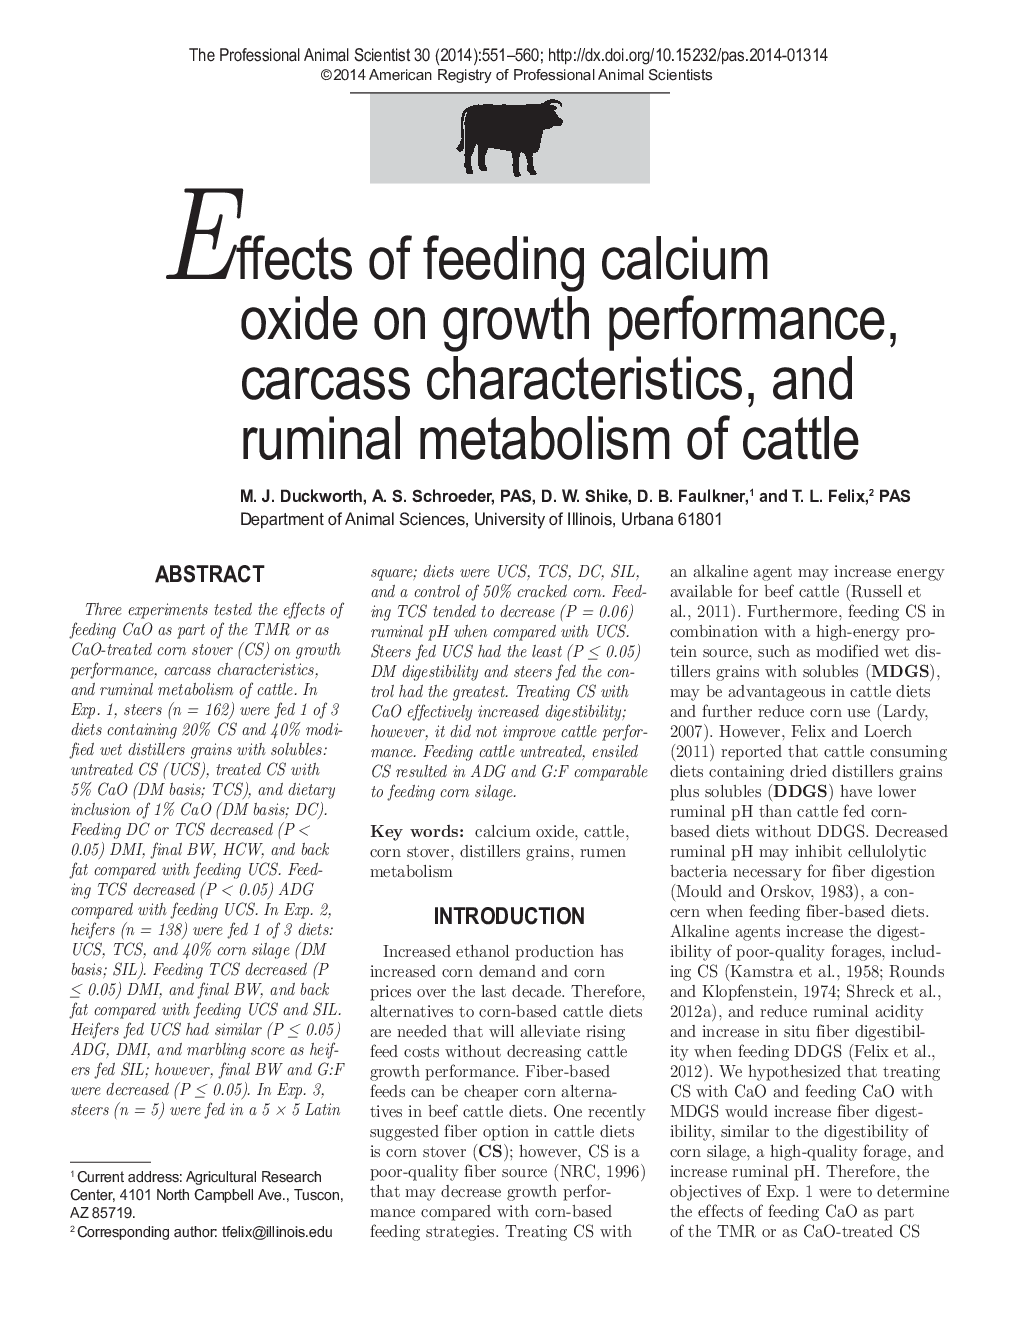 اثر تغذیه اکسید کلسیم بر عملکرد رشد، ویژگی های لاشه و متابولیسم شوری گاو 